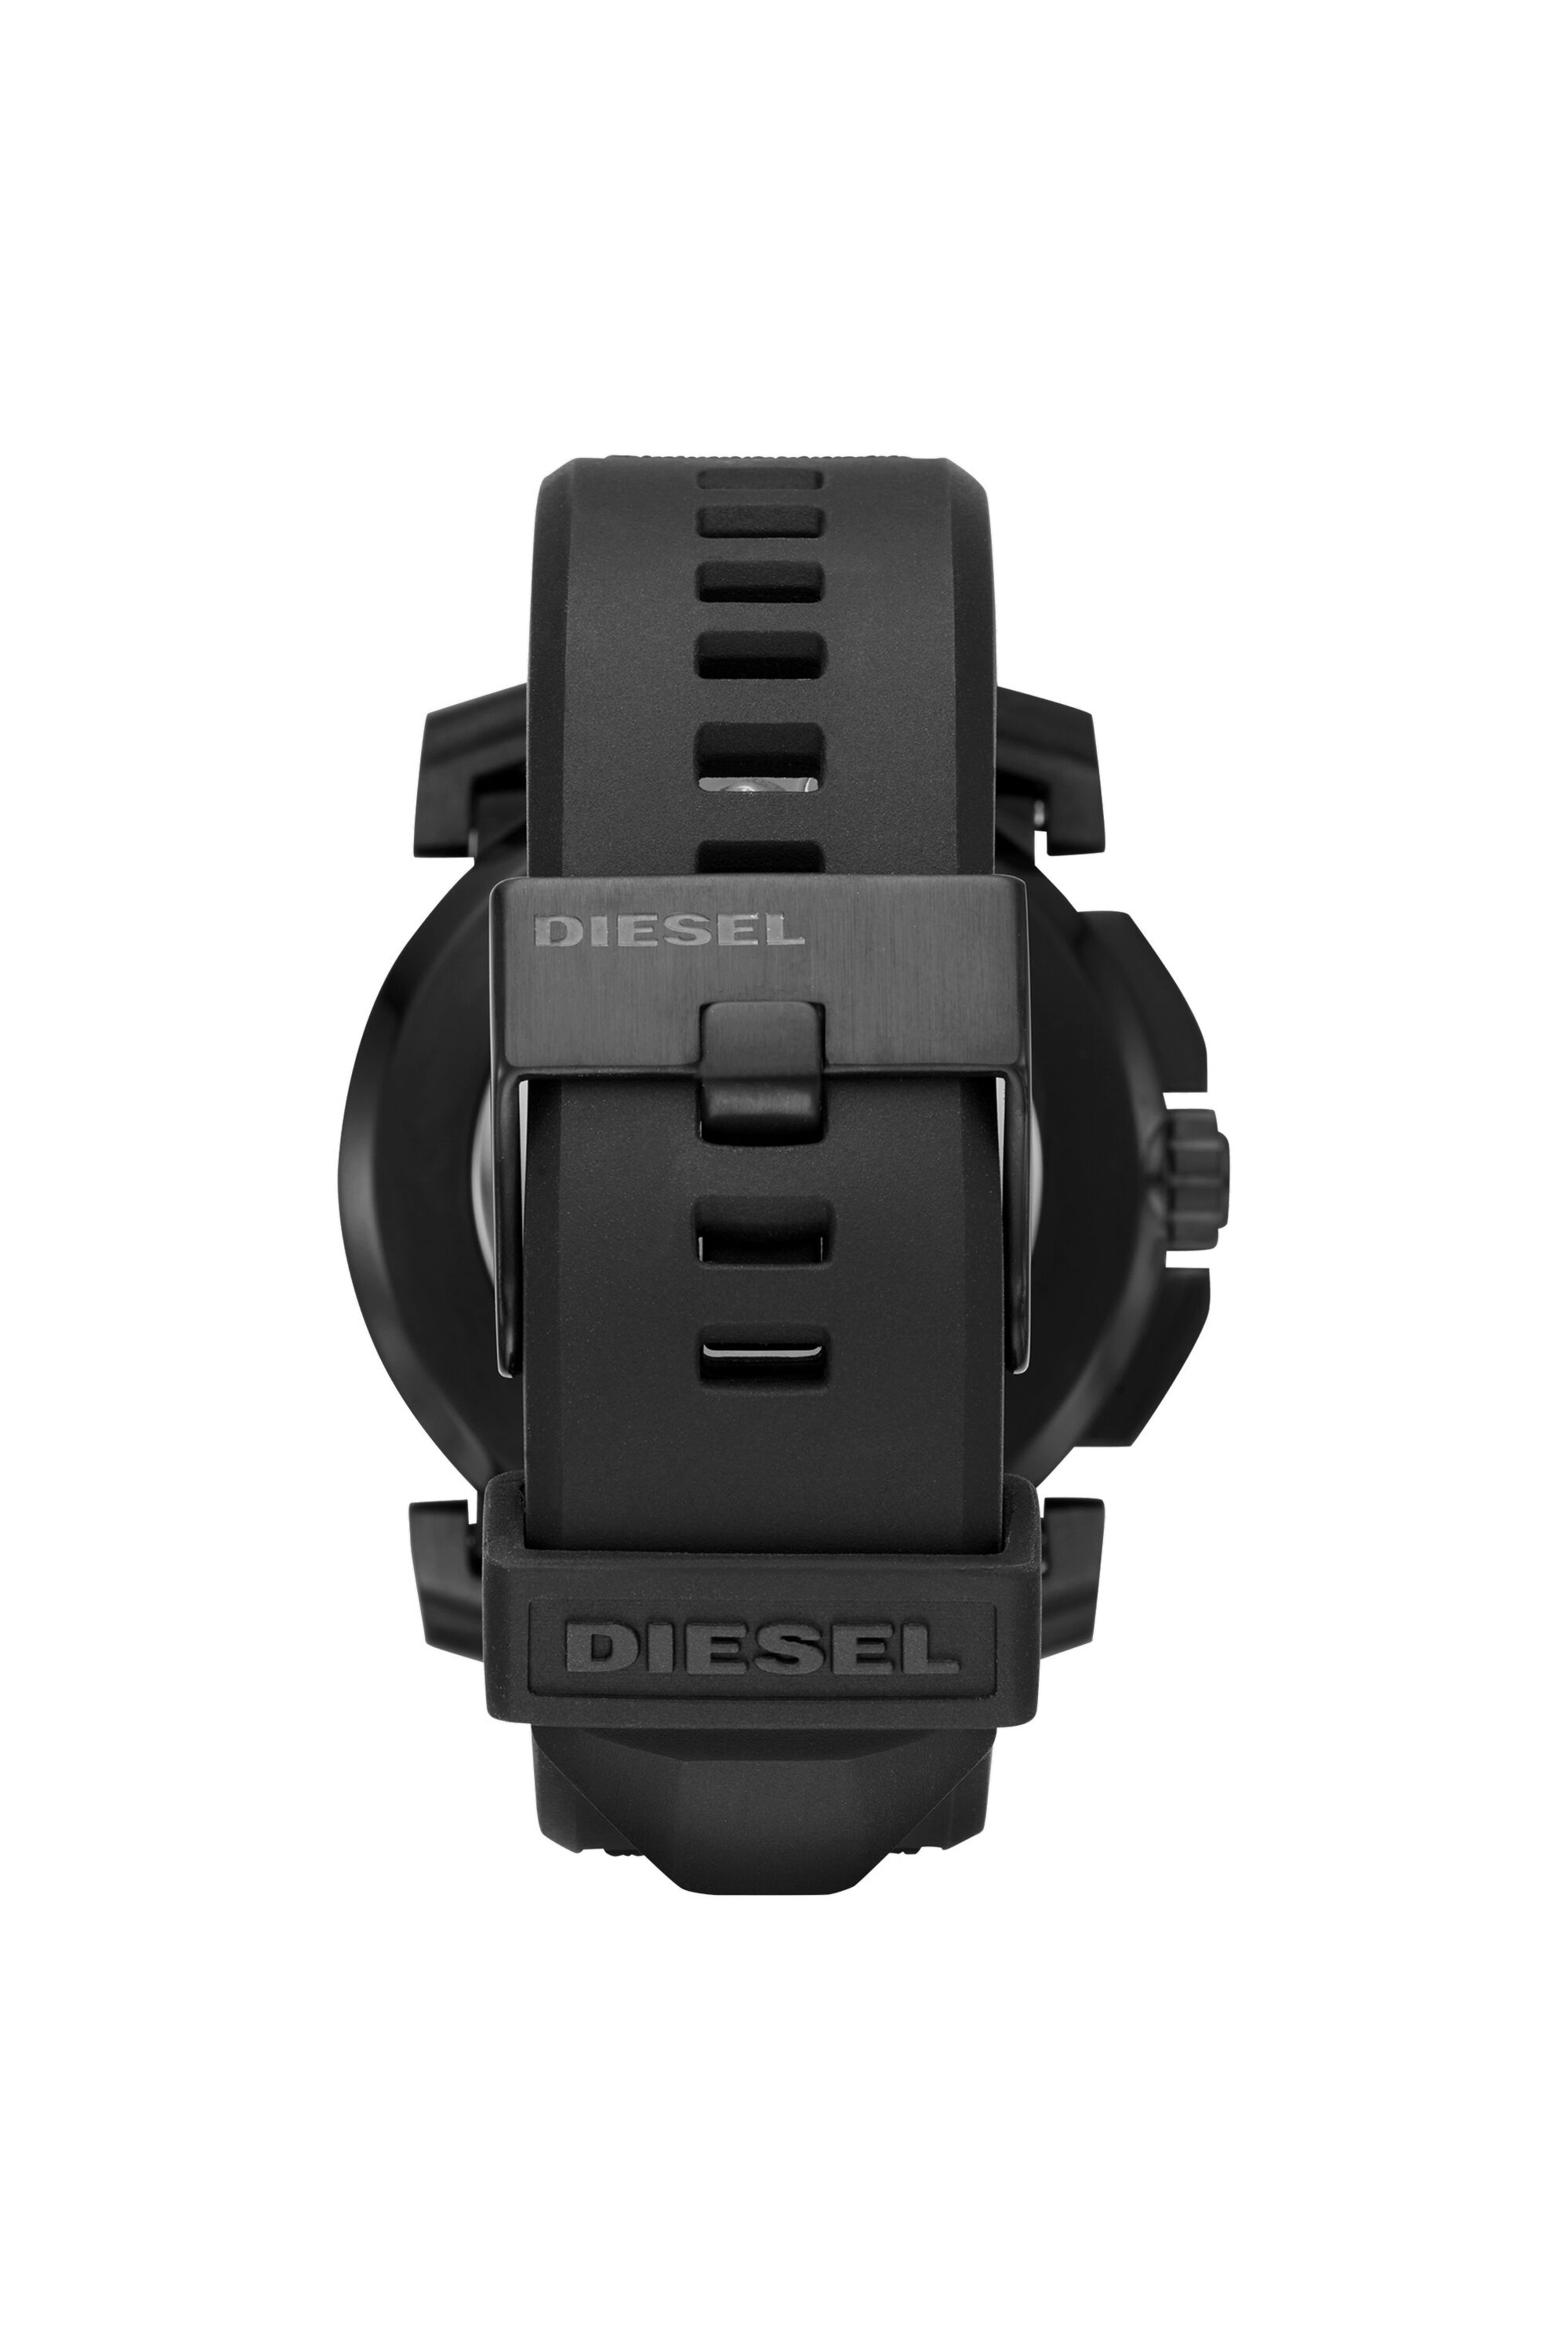 Diesel - DT1006,  - Image 2